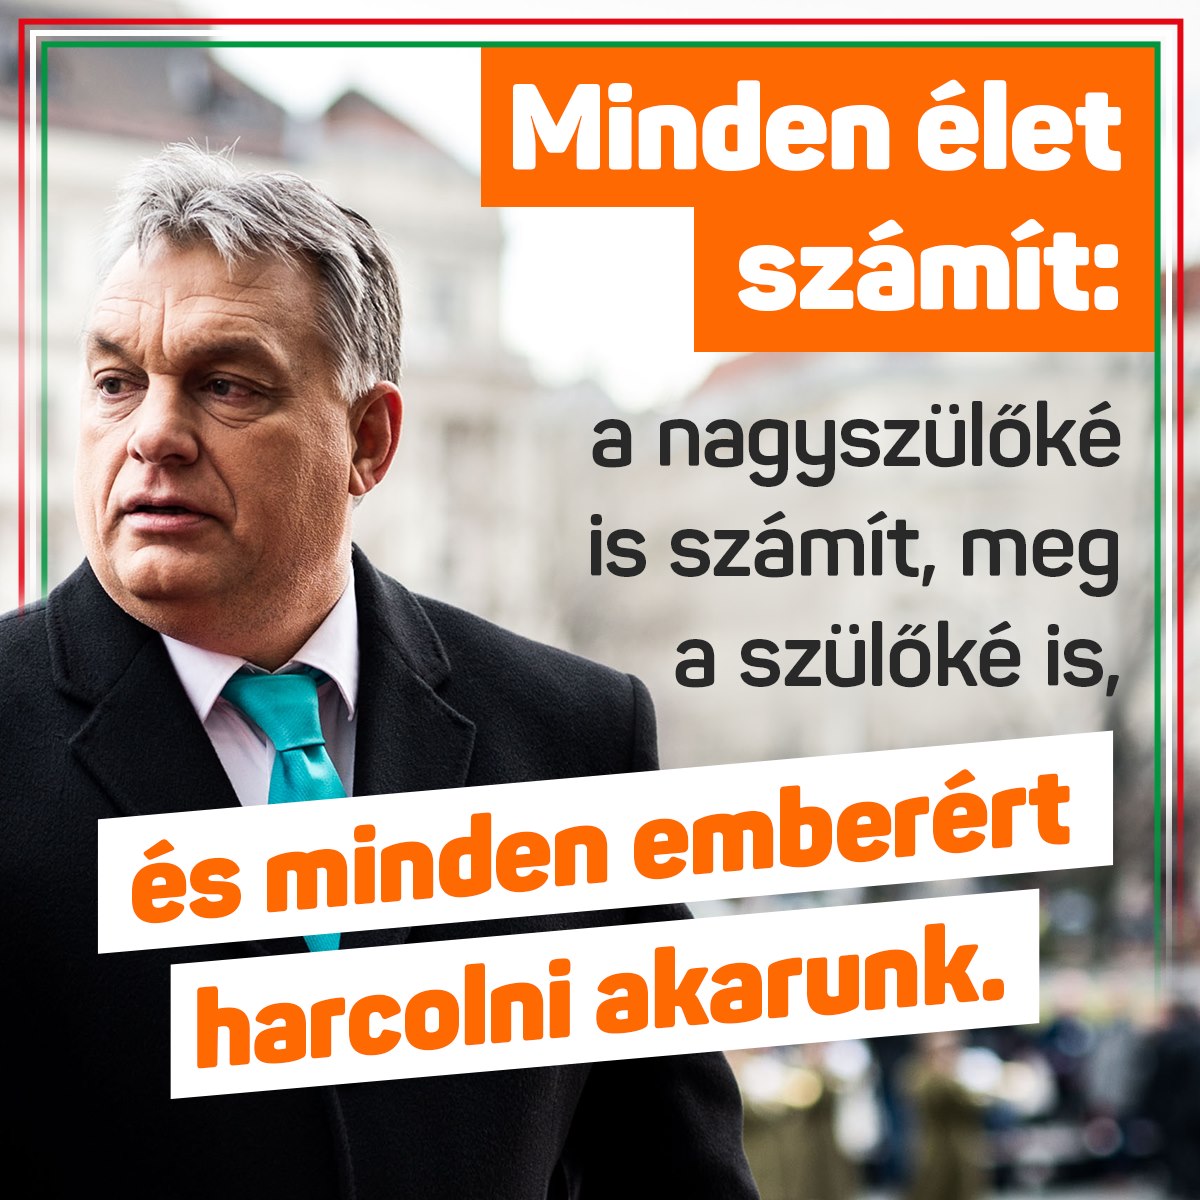 Orbán Viktor – Minden élet számít. A nagyszülőké is számít, meg a szülőké is, és minden emberért harcolni akarunk.